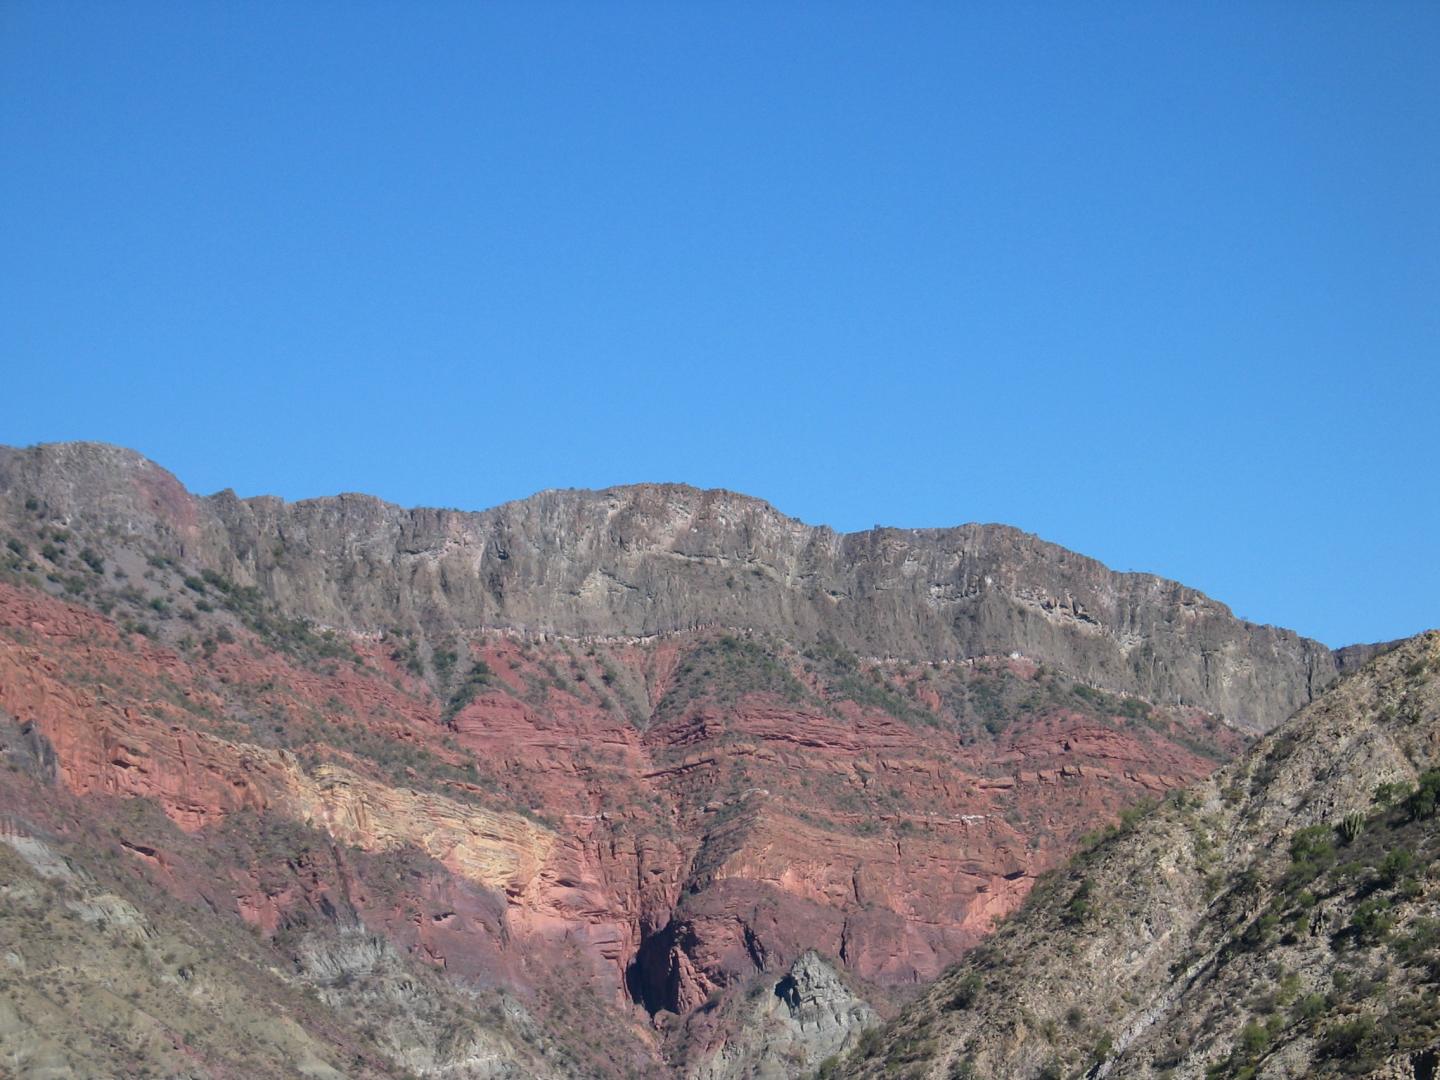 A View of a Cliff near Tarabuco